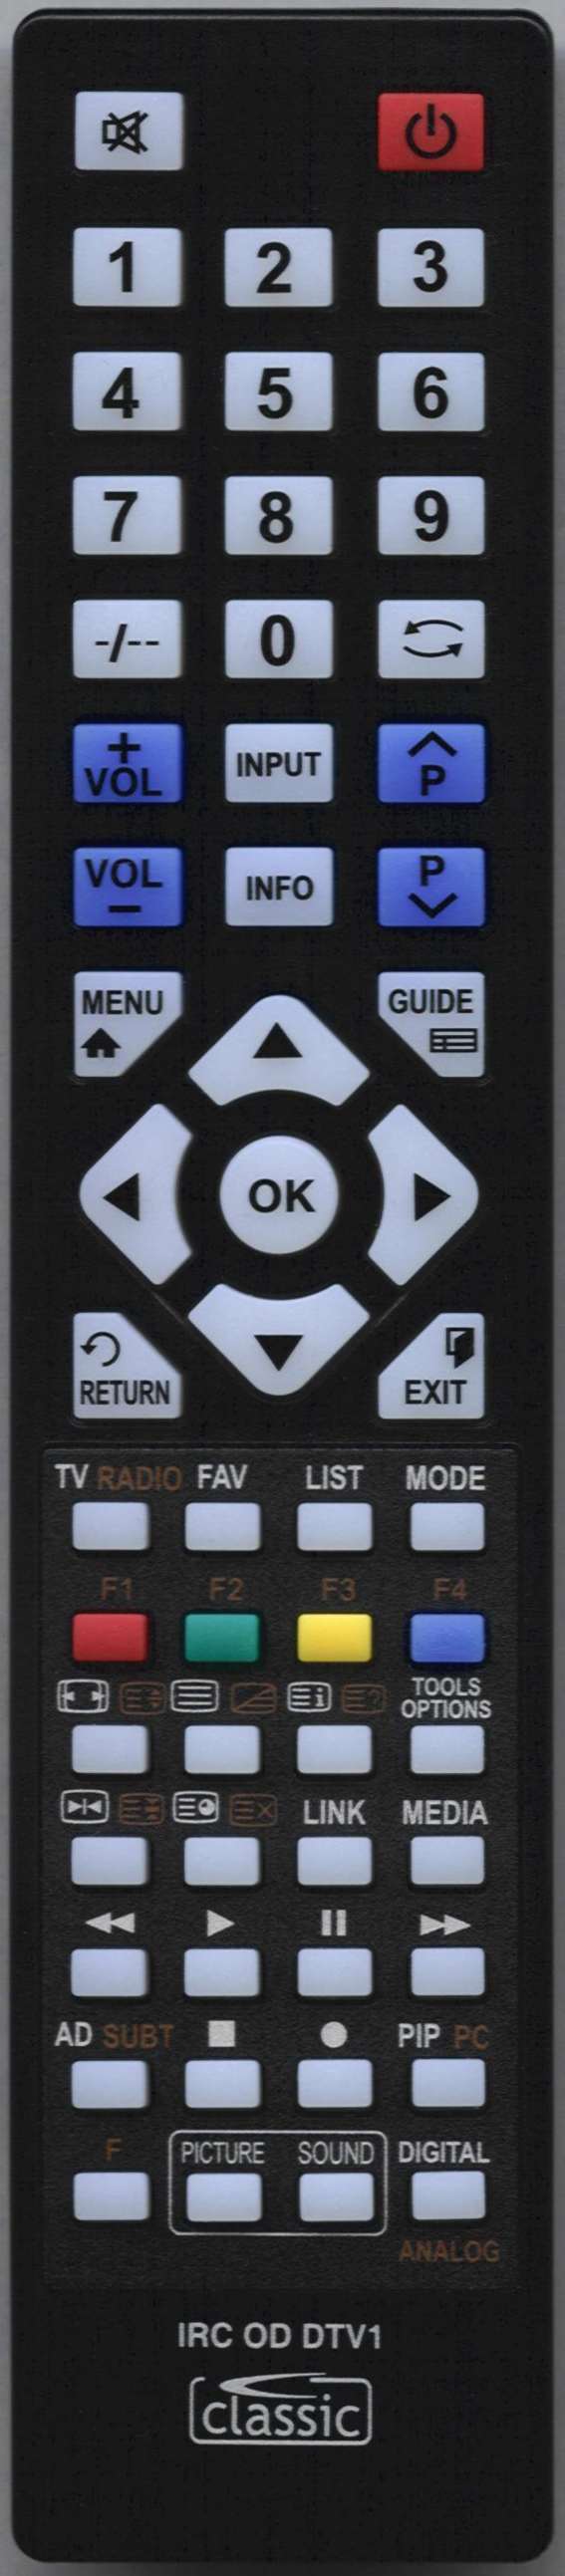 LUXOR 10054474 Remote Control Alternative